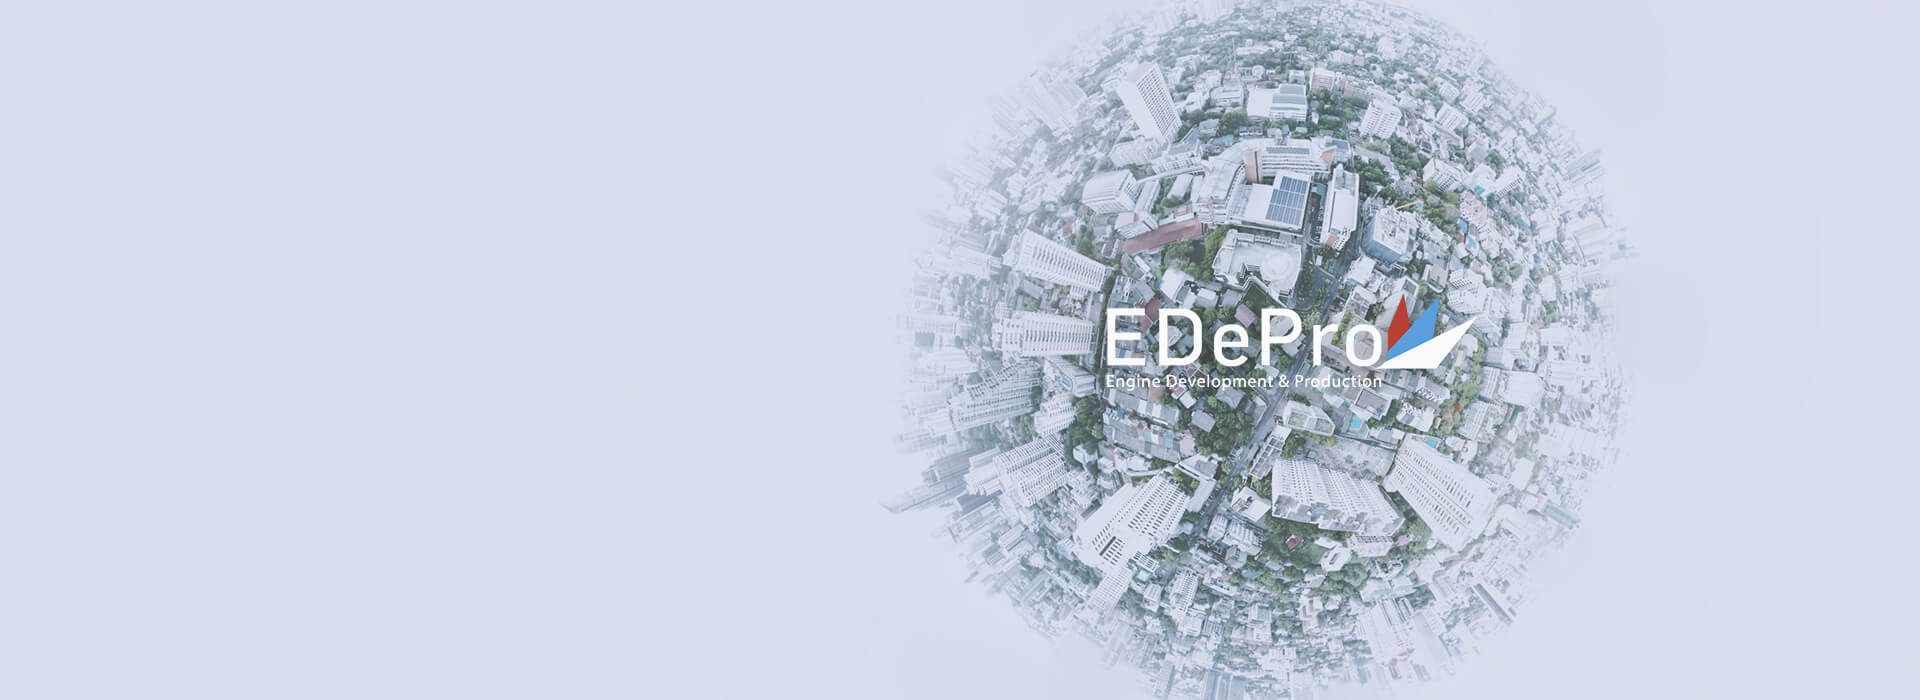 EDePro | Obraćanje u vezi nedavnih medijskih navoda